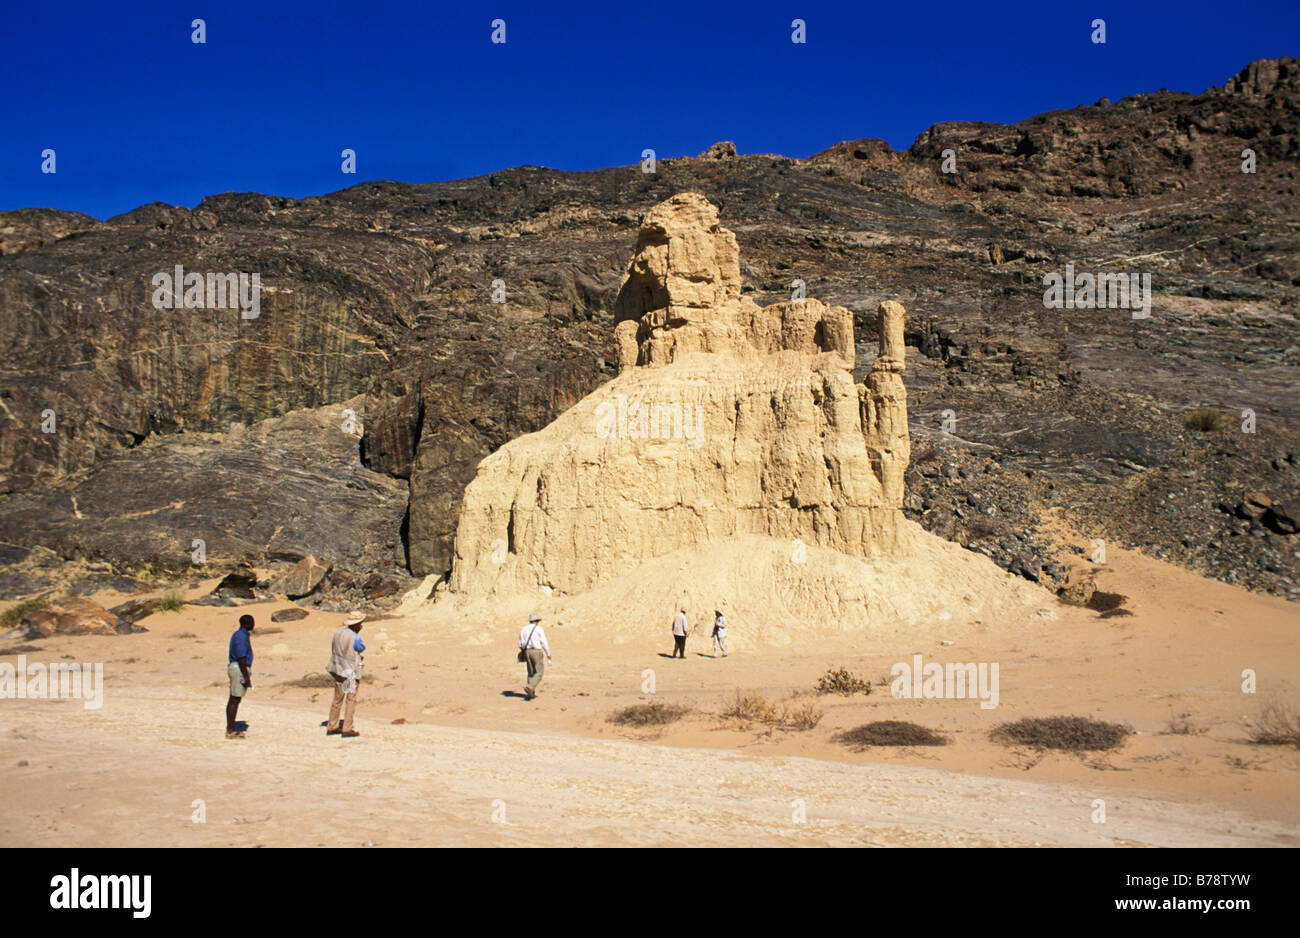 Gruppo di turisti di ispezionare i castelli di argilla che sono naturali insolite formazioni rocciose in la Skeleton Coast. Foto Stock